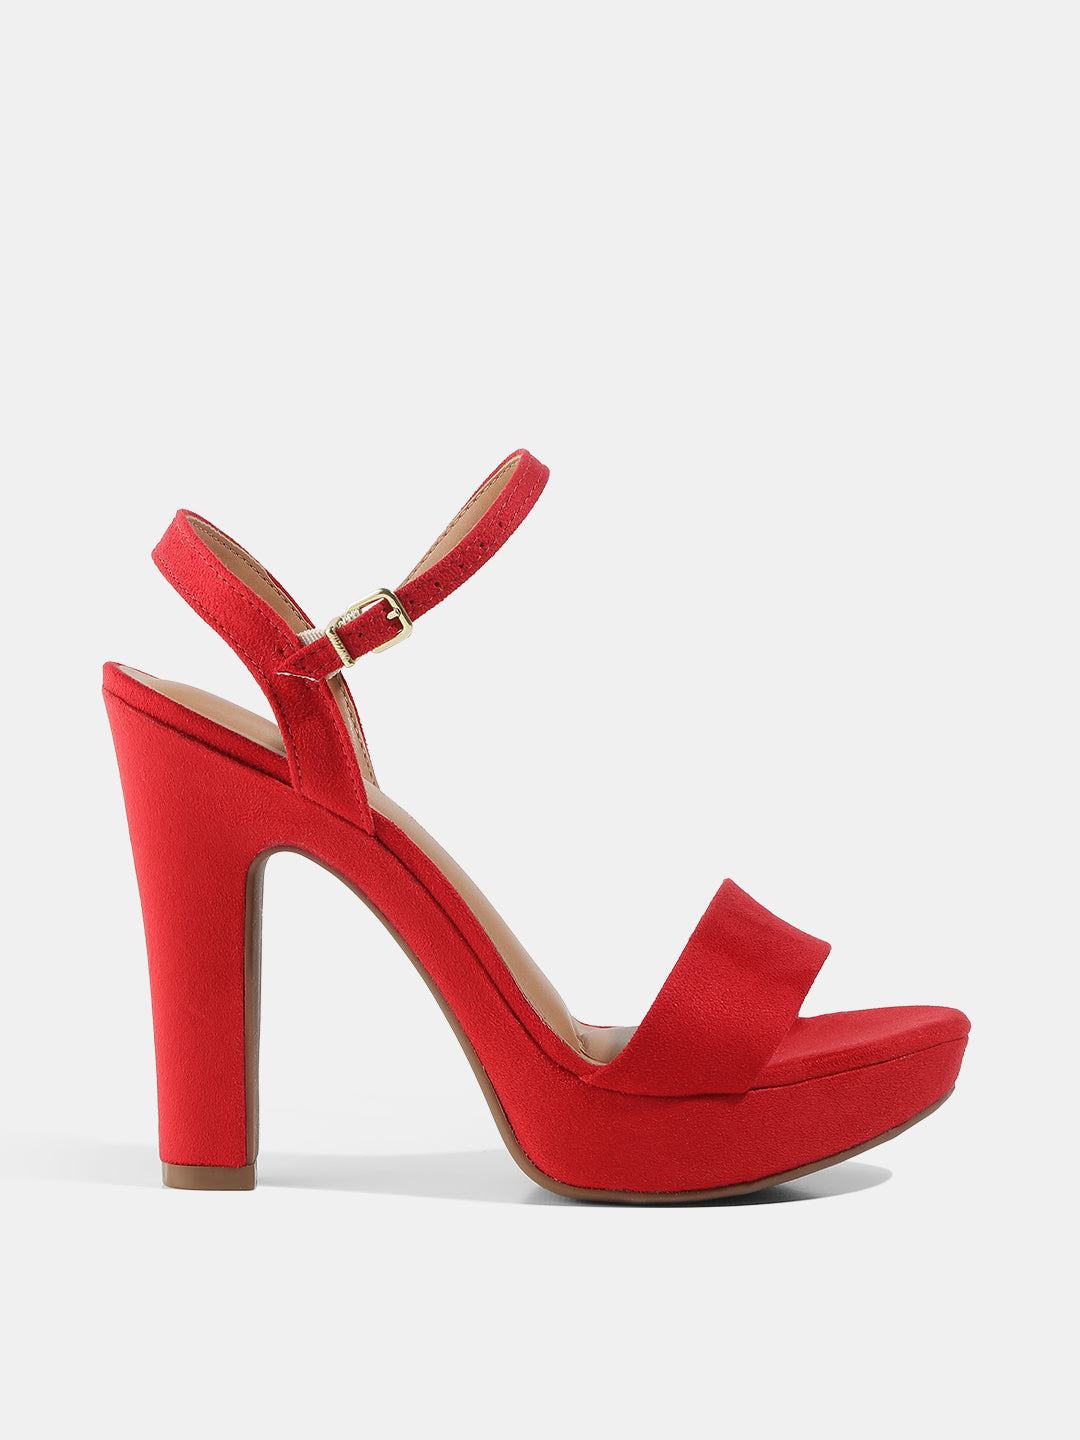 Aldo Red Block Heels for Women : Amazon.in: Shoes & Handbags